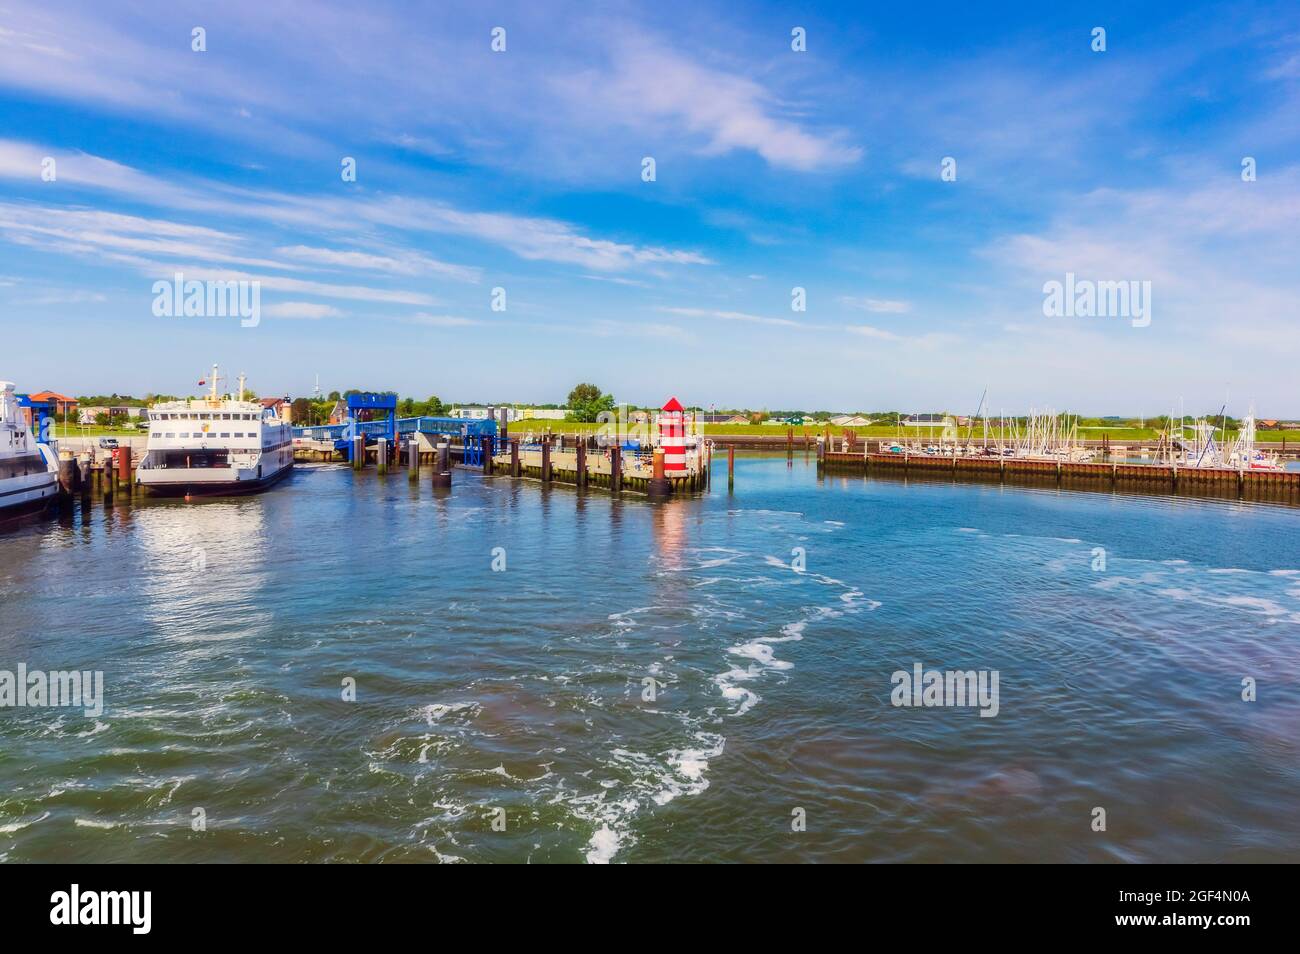 Germania, Schleswig-Holstein, Wyk auf Fohr, barche ormeggiate nel porto sull'isola di Fohr Foto Stock